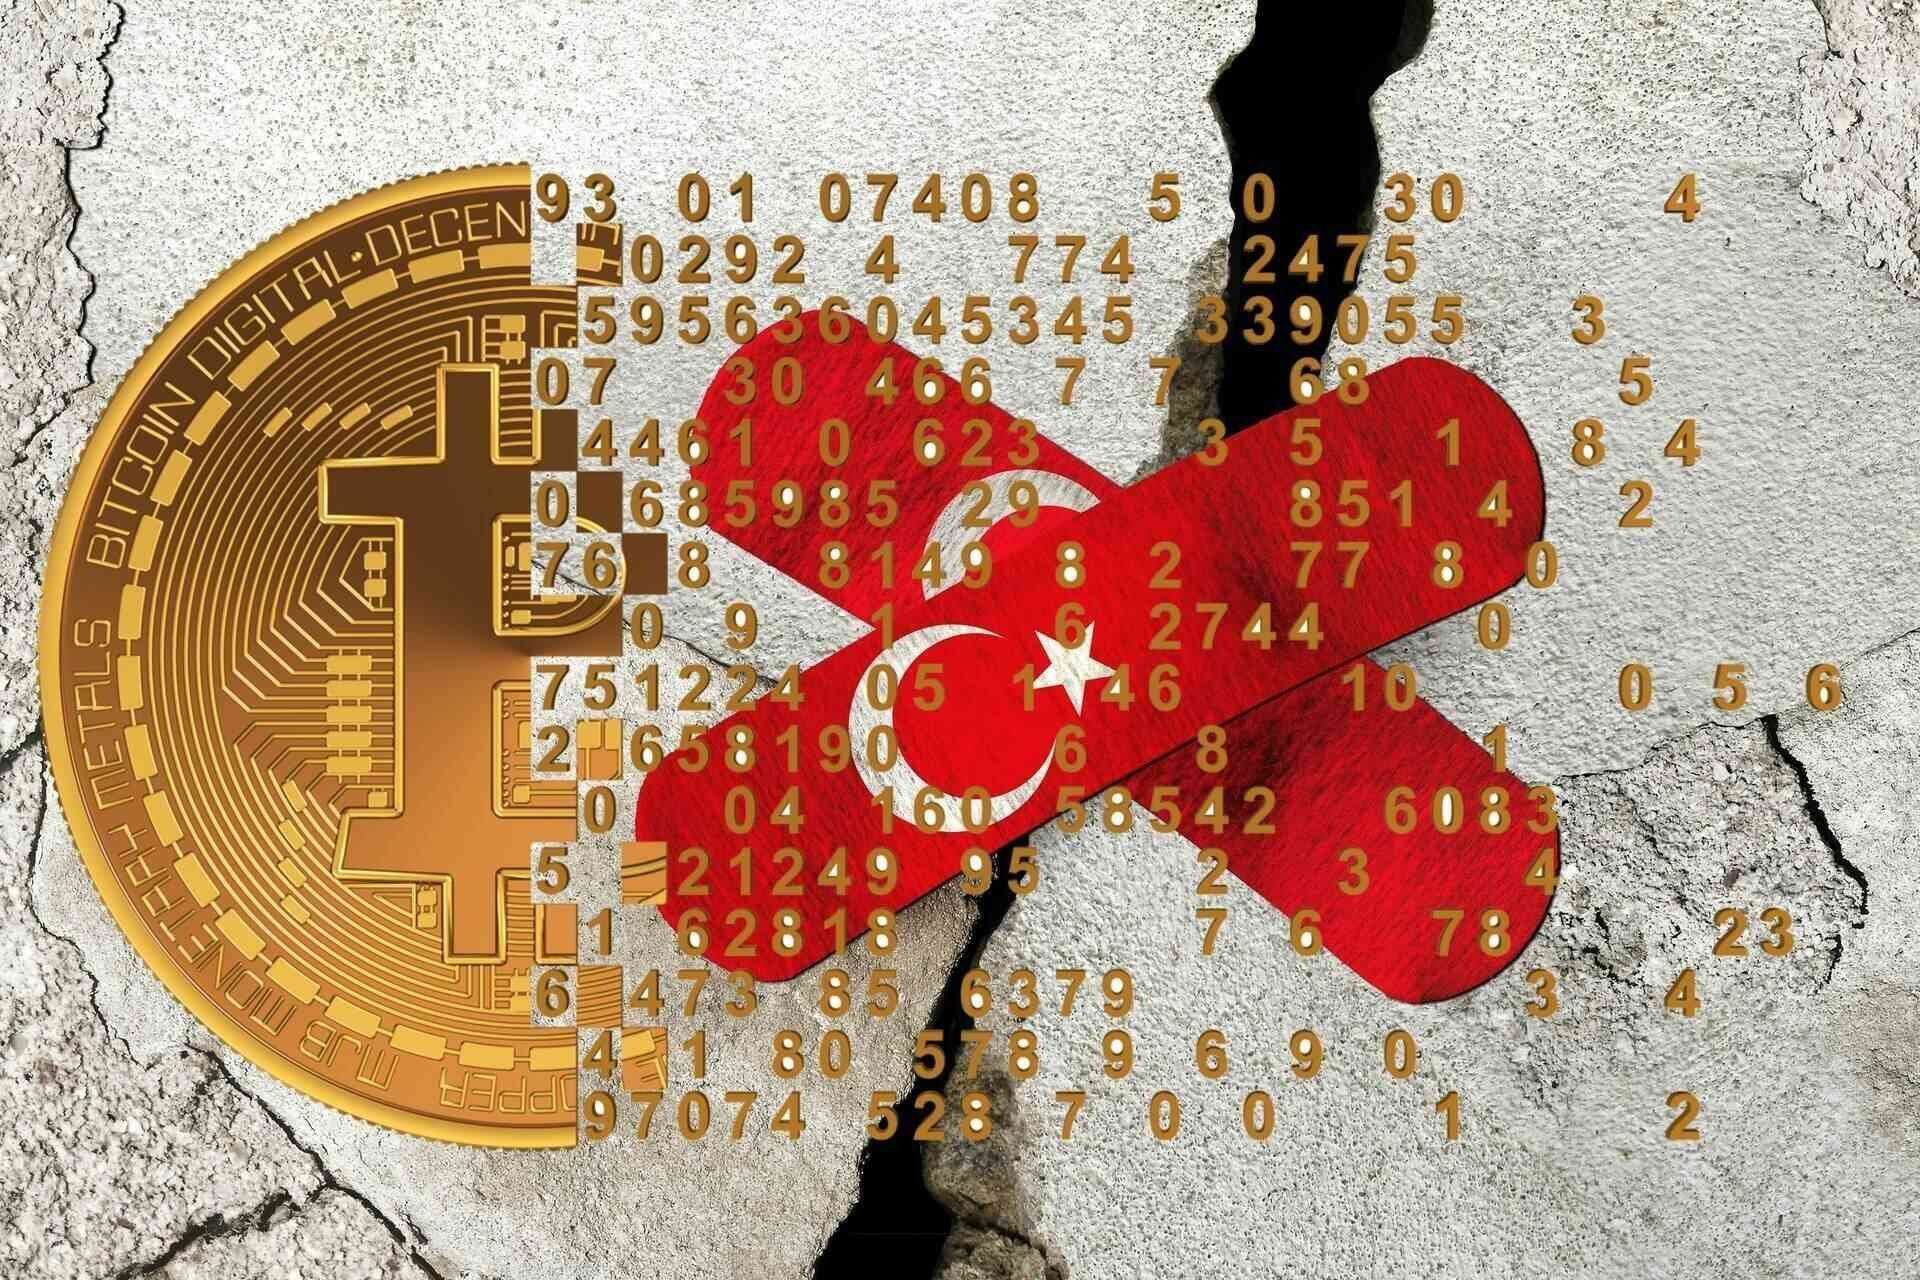 Cryptocurrencies: na de gewelddadige aardbeving die plaatsvond in Zuid-Anatolië tussen 5 en 6 februari 2023, belooft de wereldwijde cryptocurrency- en Blockchain-industrie ook slachtoffers te helpen met grote donaties